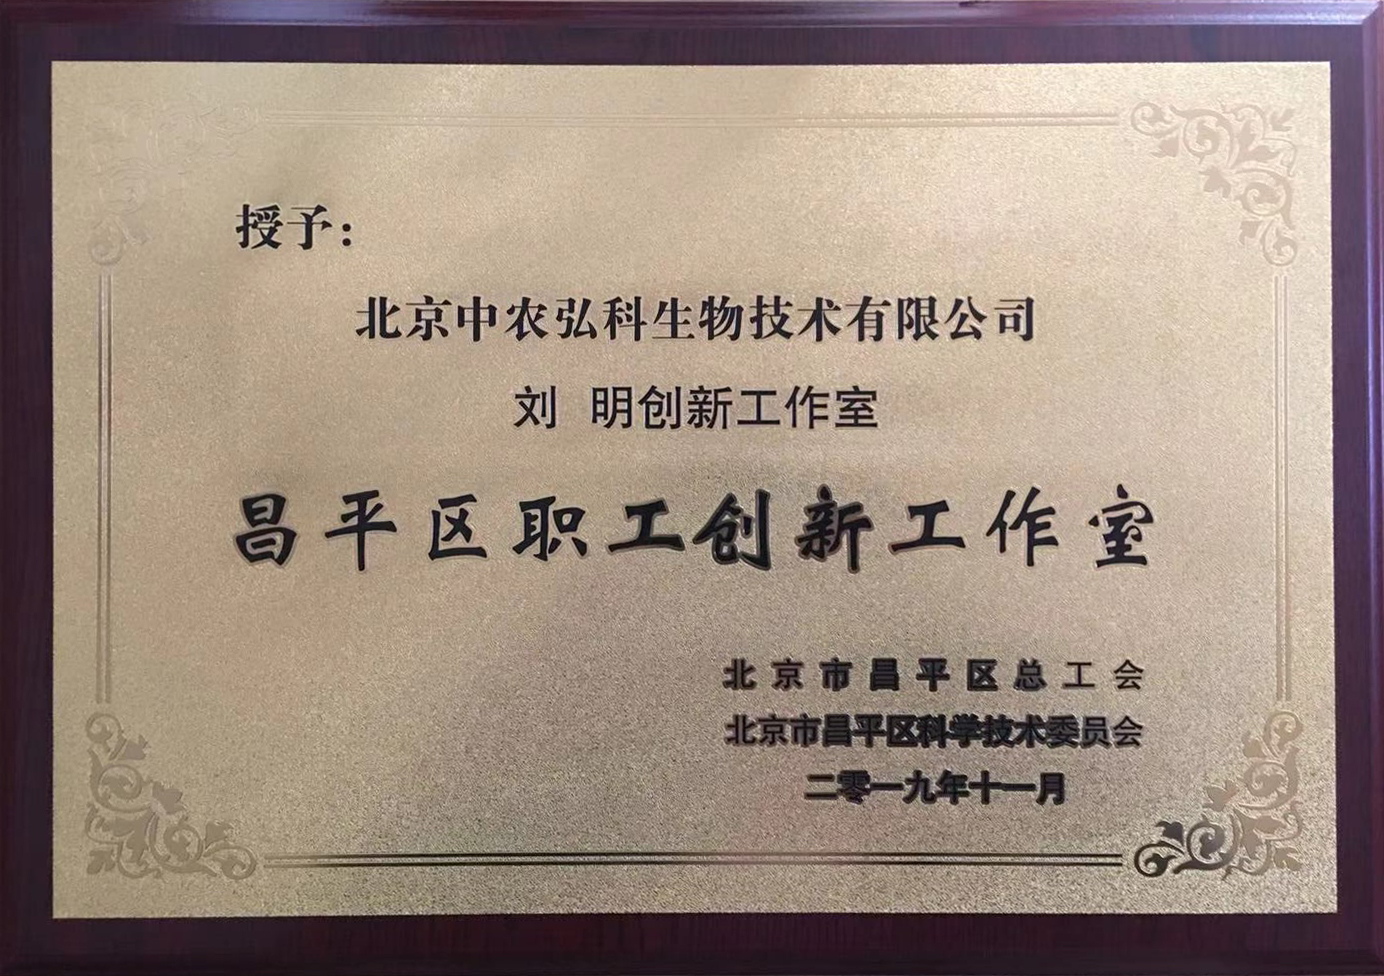 弘科生物绿色生物饲料开发创新工作室获评北京市区级职工创新工作室